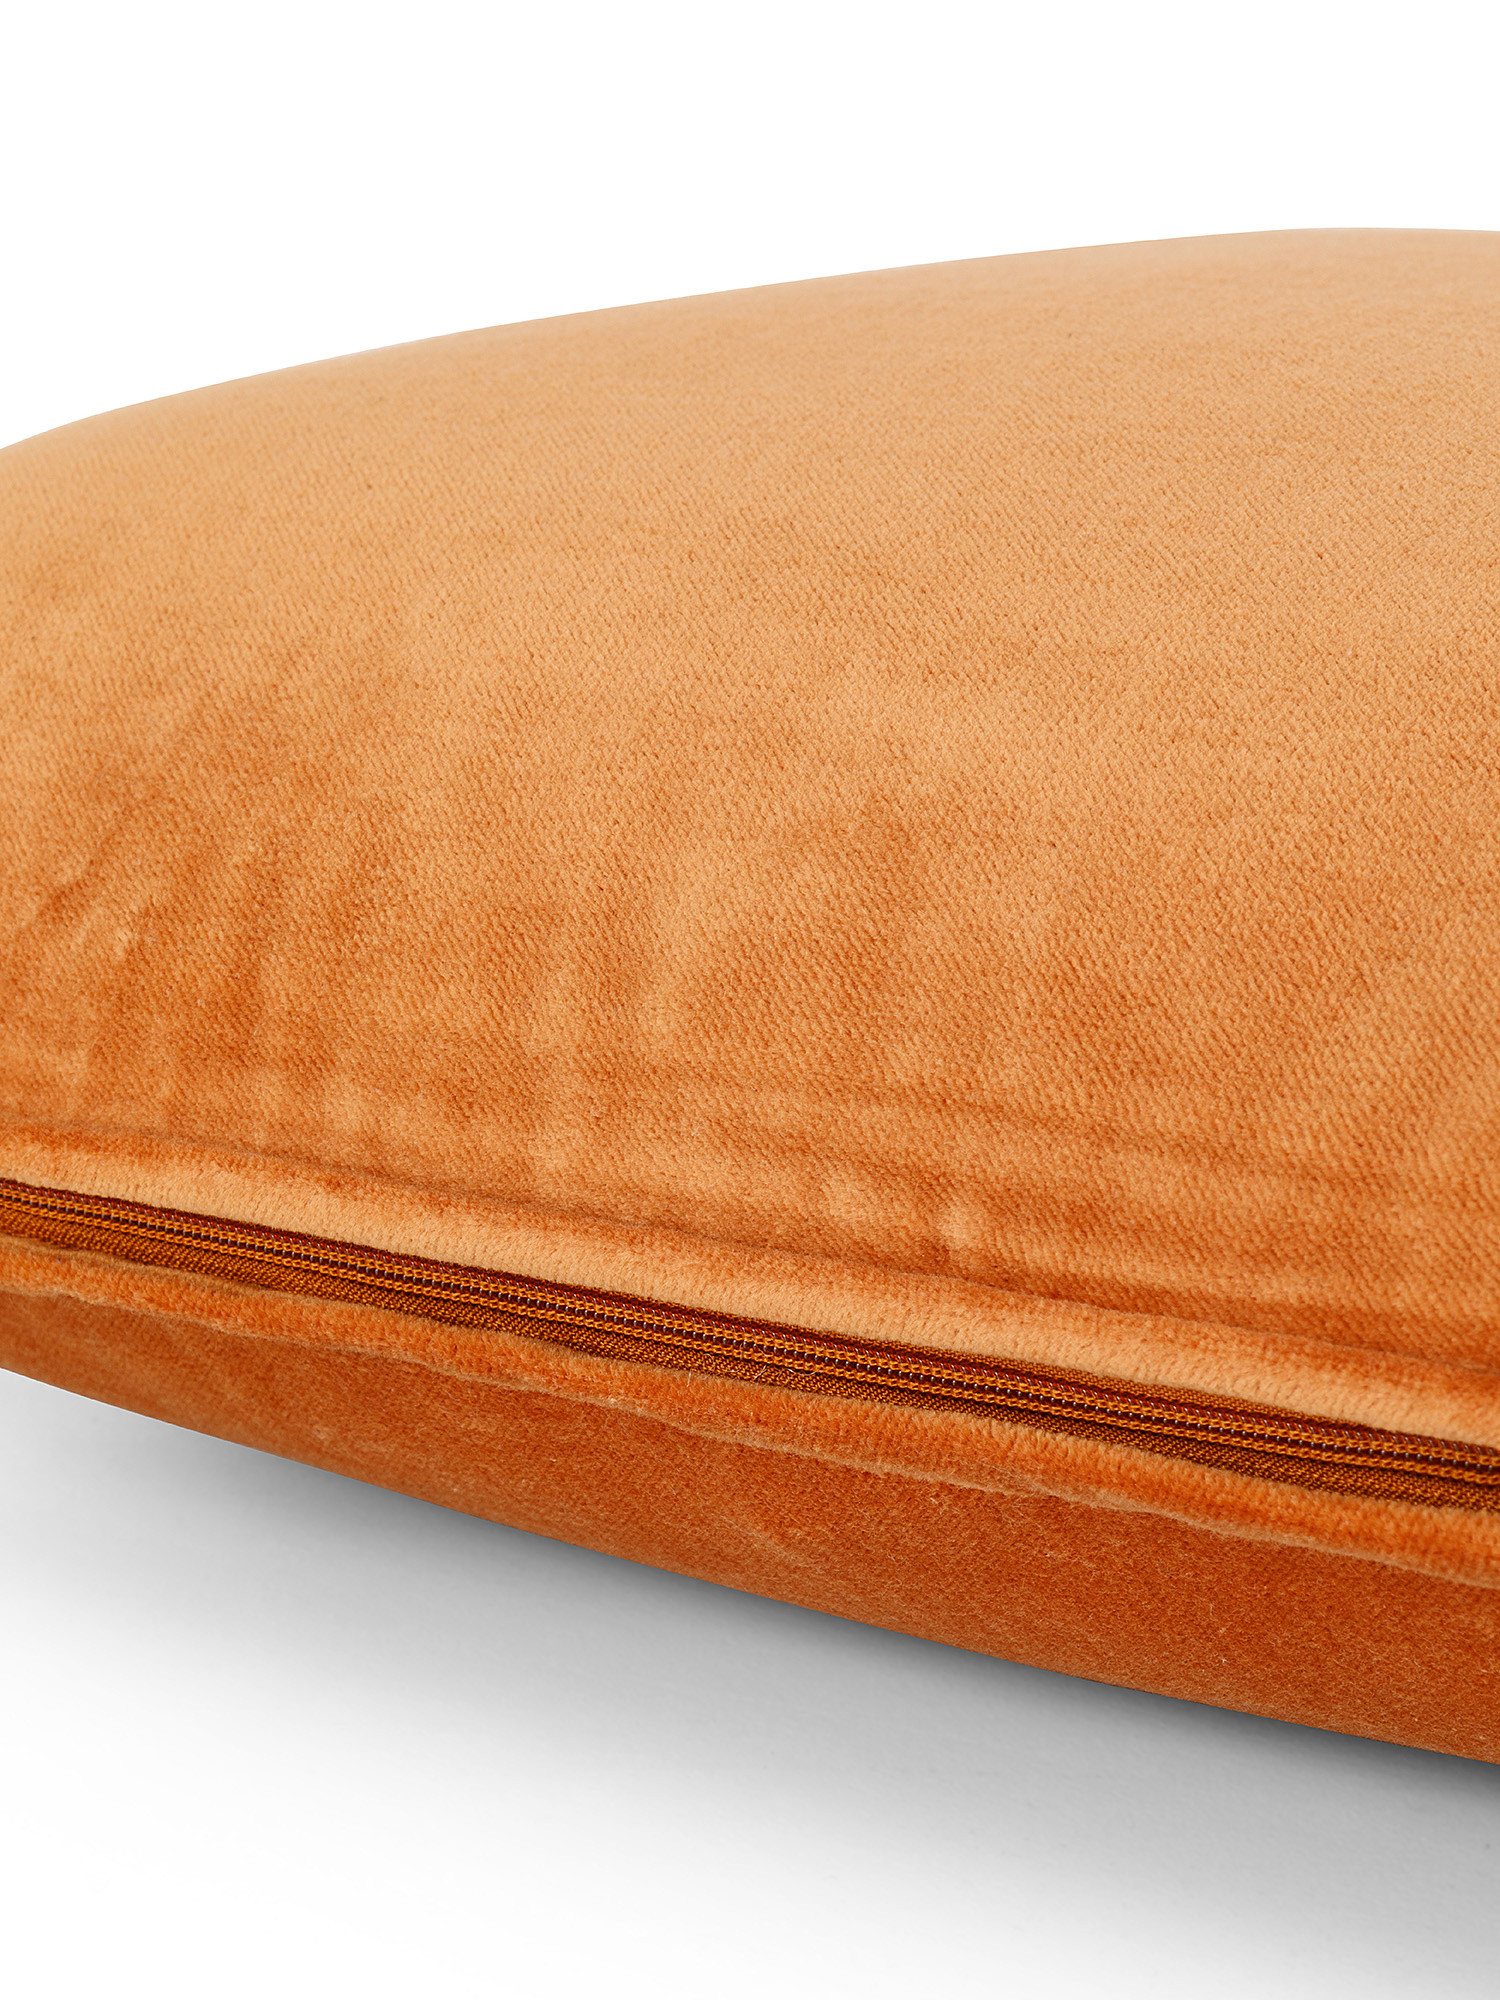 Plain velvet cushion 45x45cm, Orange, large image number 2